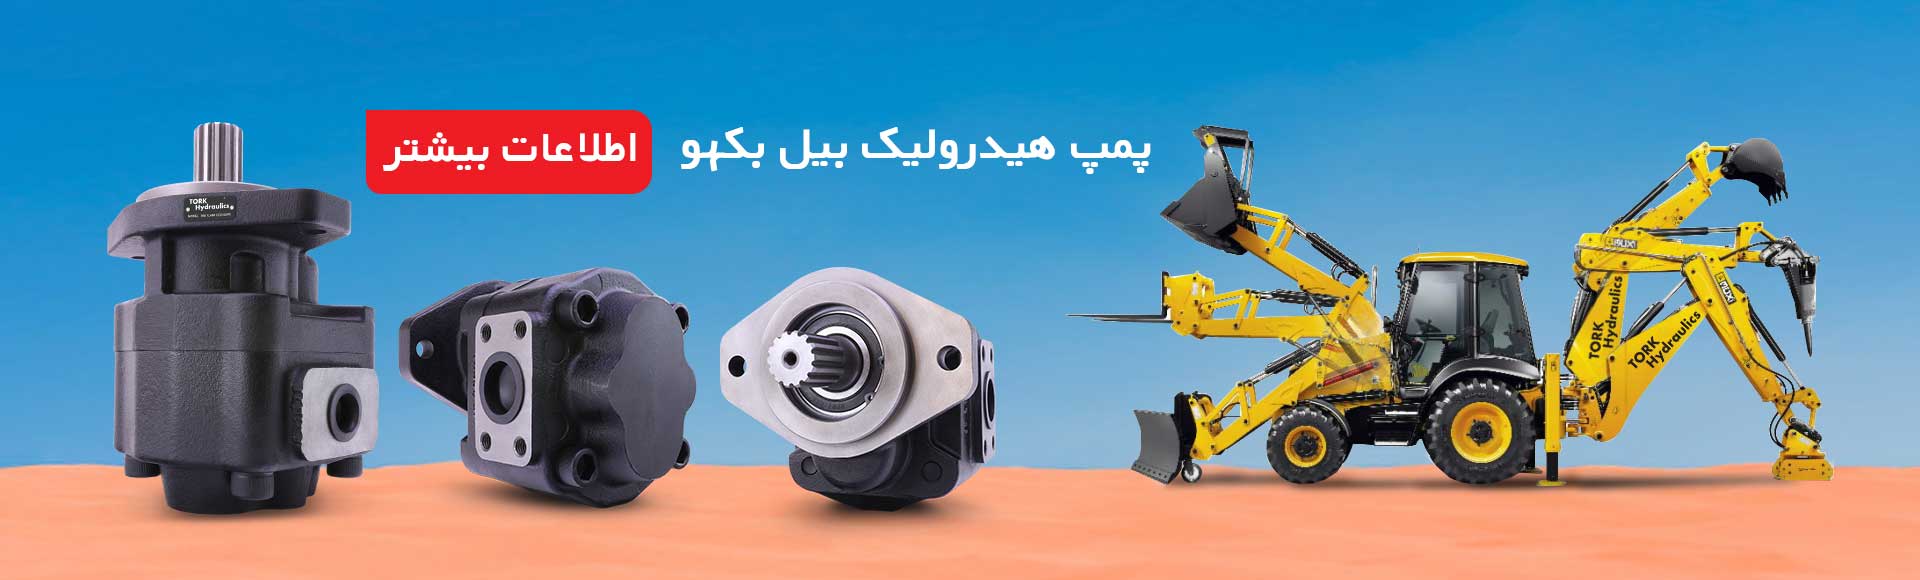 پمپ هیدرولیک بیل مکانیکی بکهو تراکتور سازی تبریز